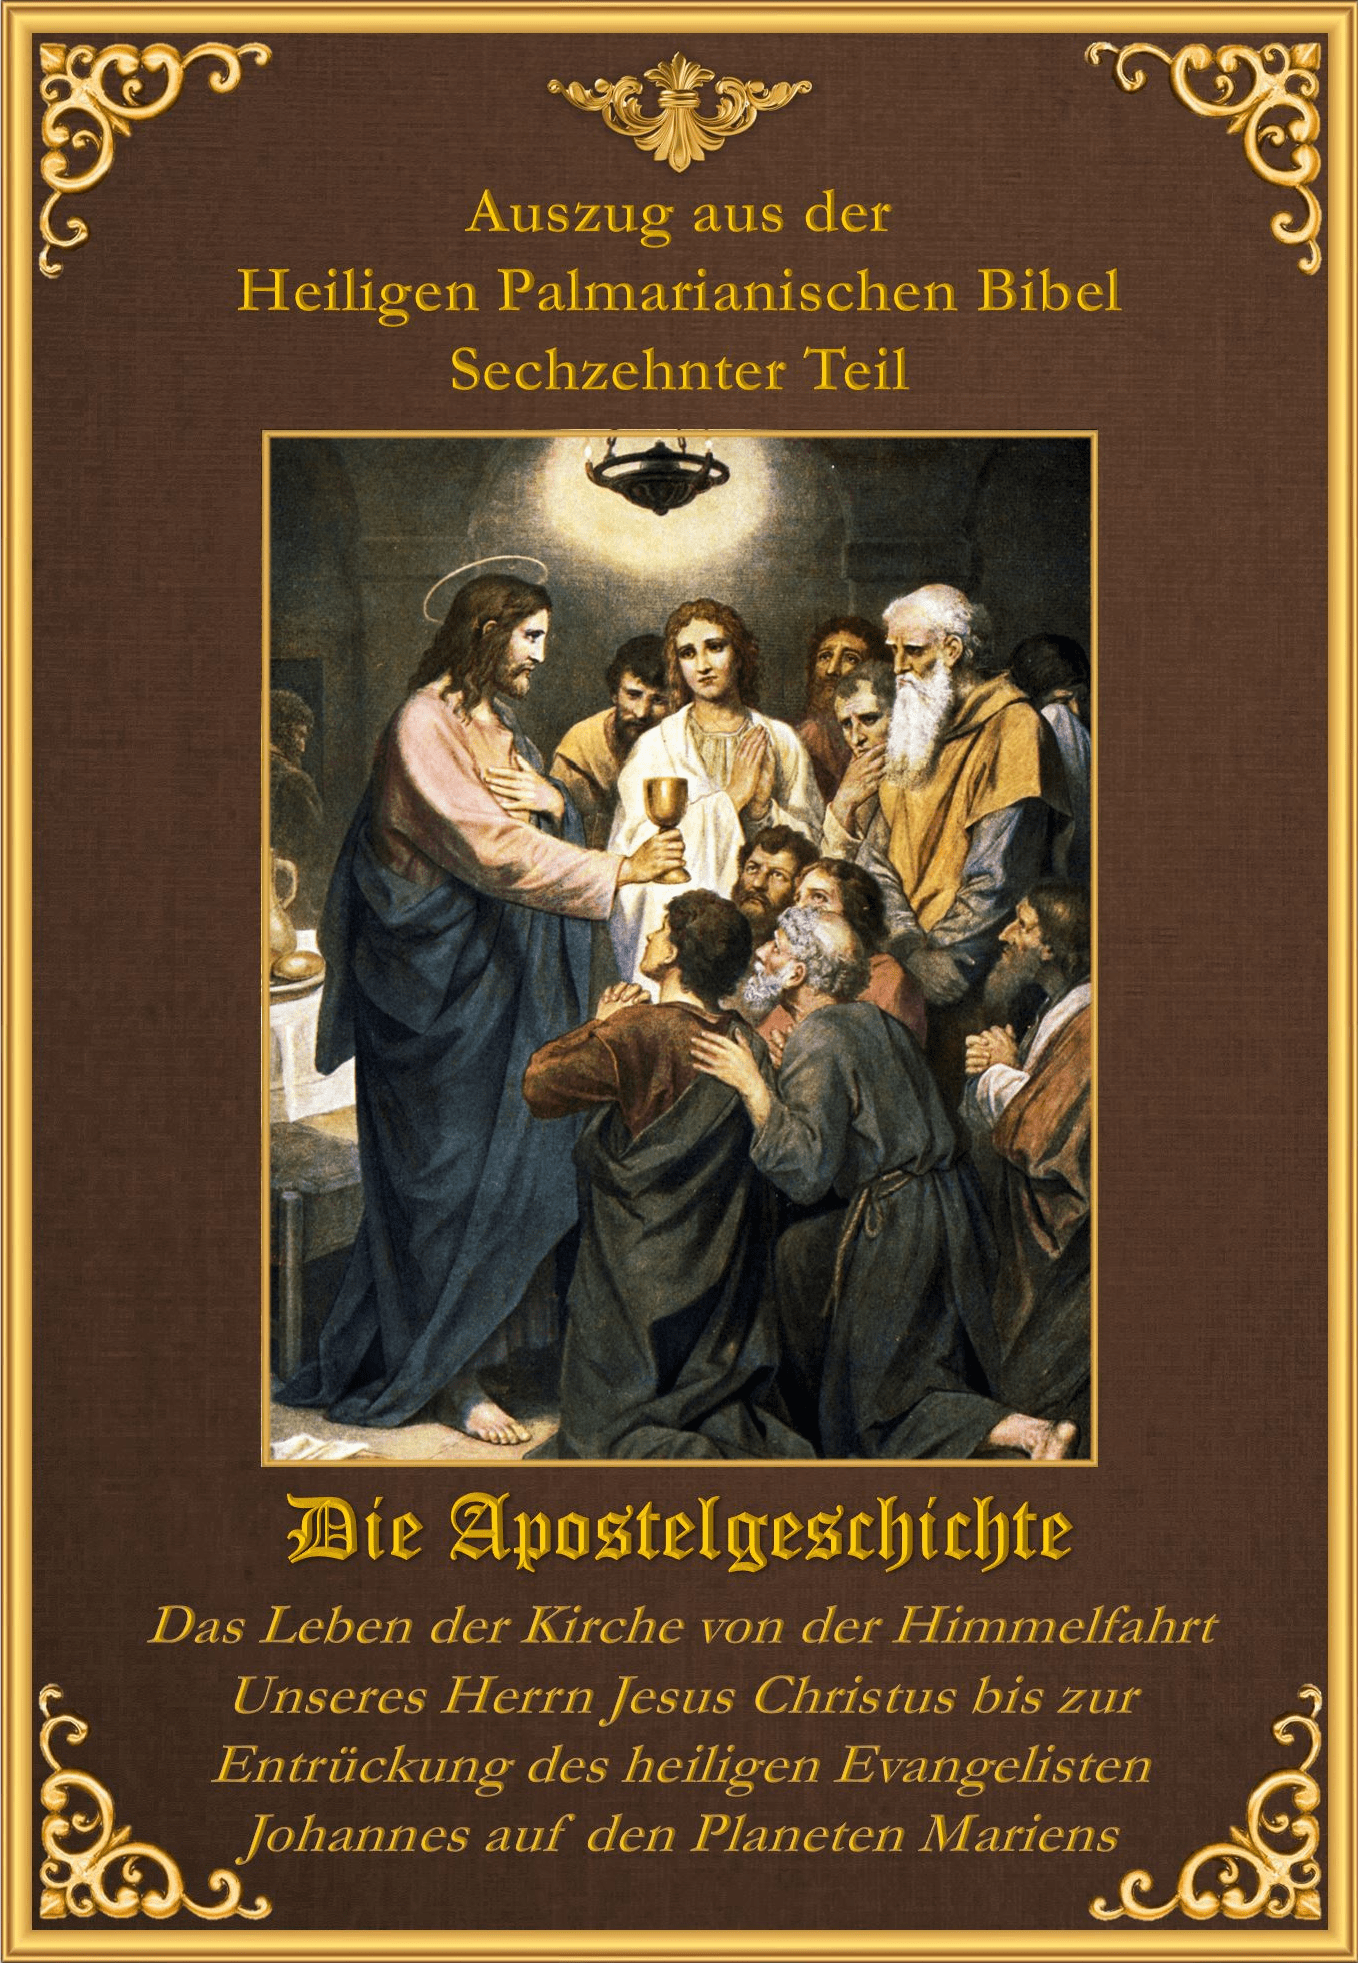 <a href="/wp-content/uploads/2019/08/Bible-Sechzehnter-Teil-1.pdf" title="Die Apostelgeschichte">Die Apostelgeschichte <br><br>Mehr</a>